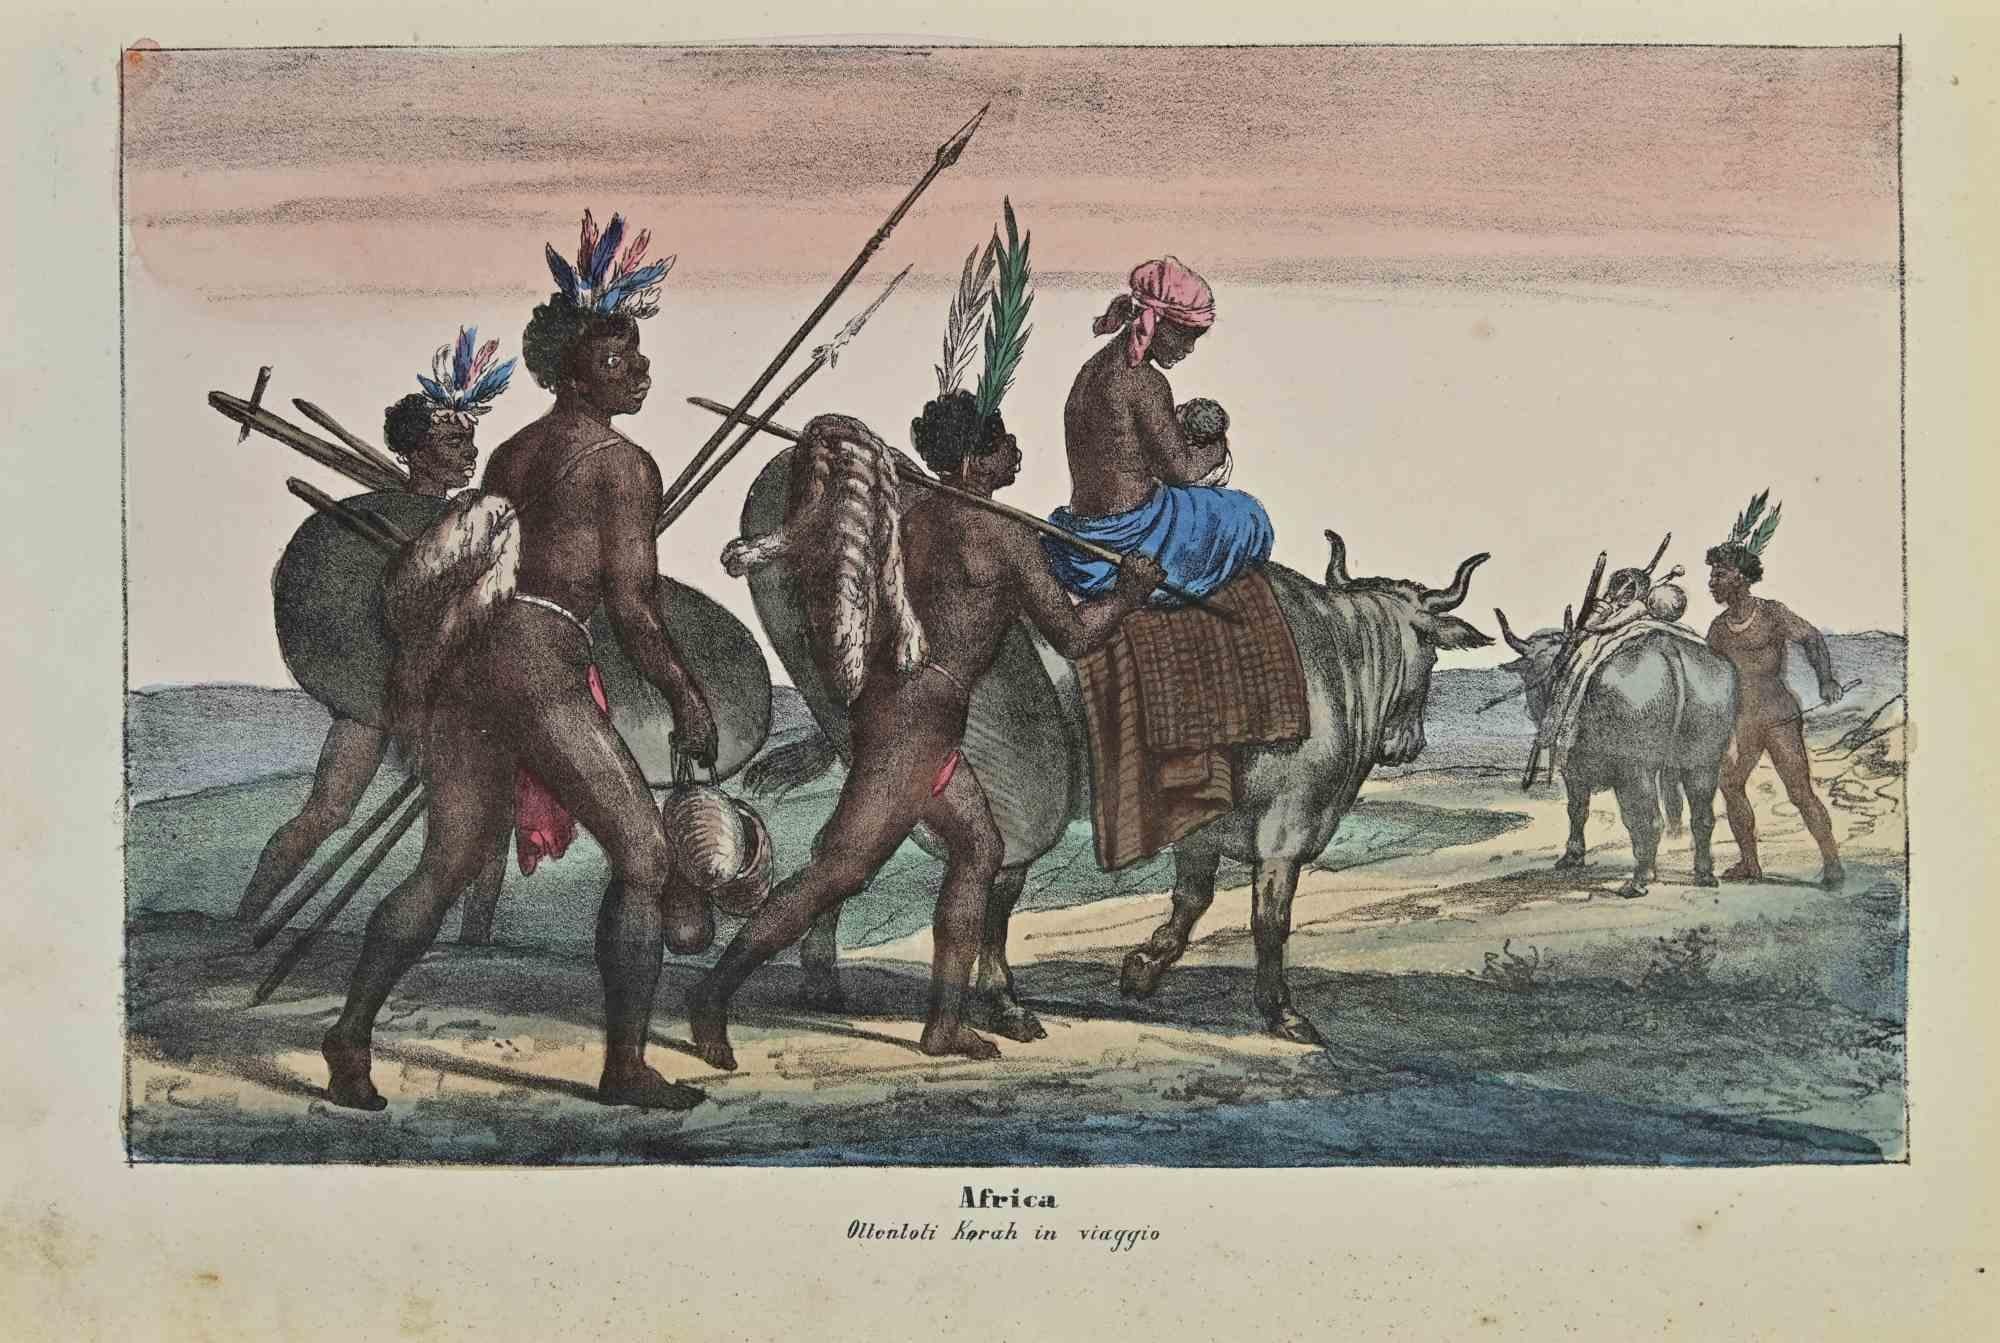 Ancient African Customs ist eine Lithographie von Auguste Wahlen aus dem Jahr 1844.

Handgefärbt.

Guter Zustand.

Im Zentrum des Kunstwerks steht der Originaltitel "Africa" und der Untertitel "Ottentoti Korah in viaggio".

Das Werk ist Teil der